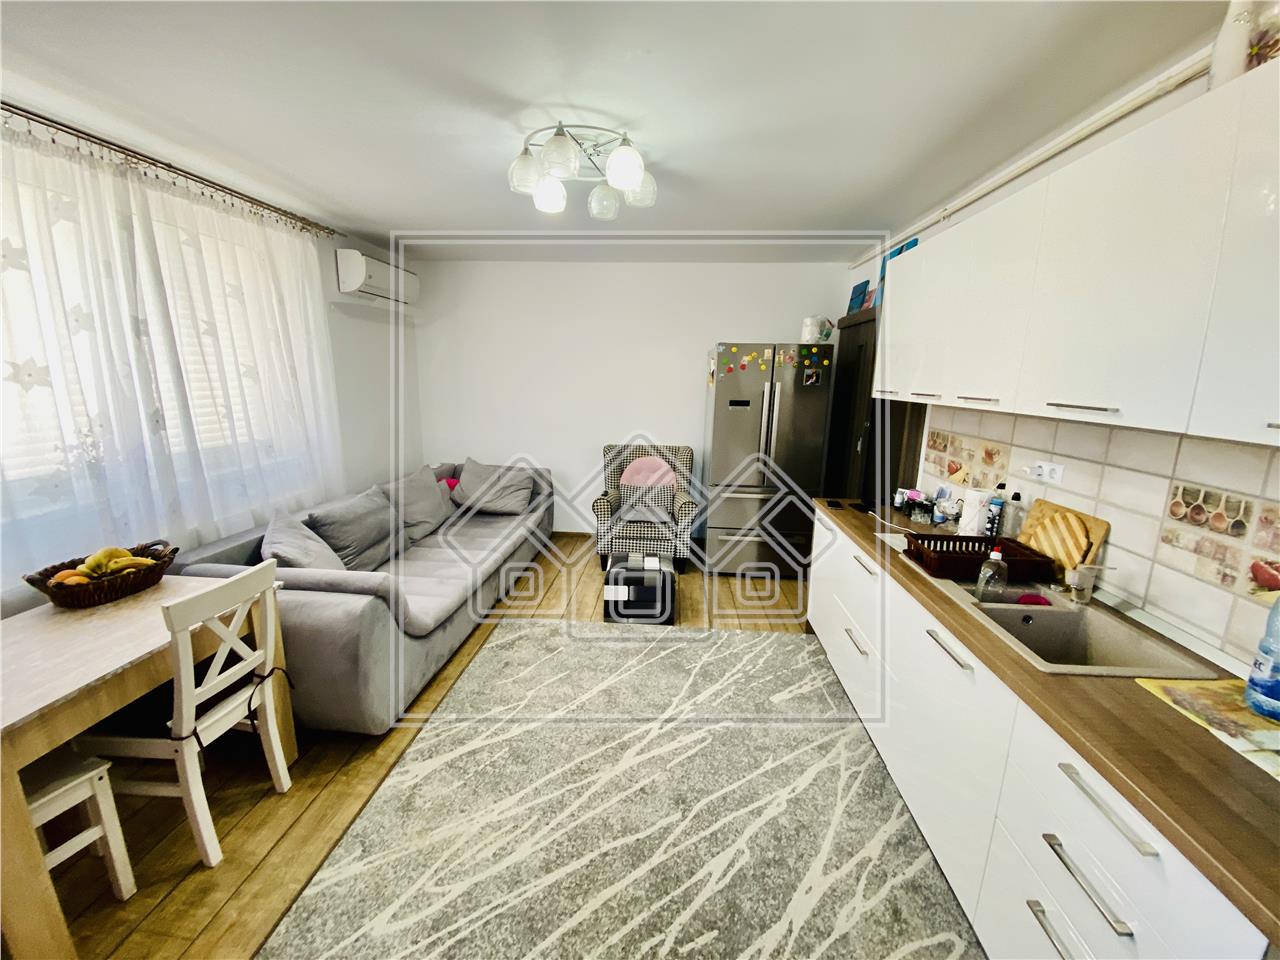 Apartament de vanzare in Sibiu - 65 mp utili - etaj 1/2 - Lazaret